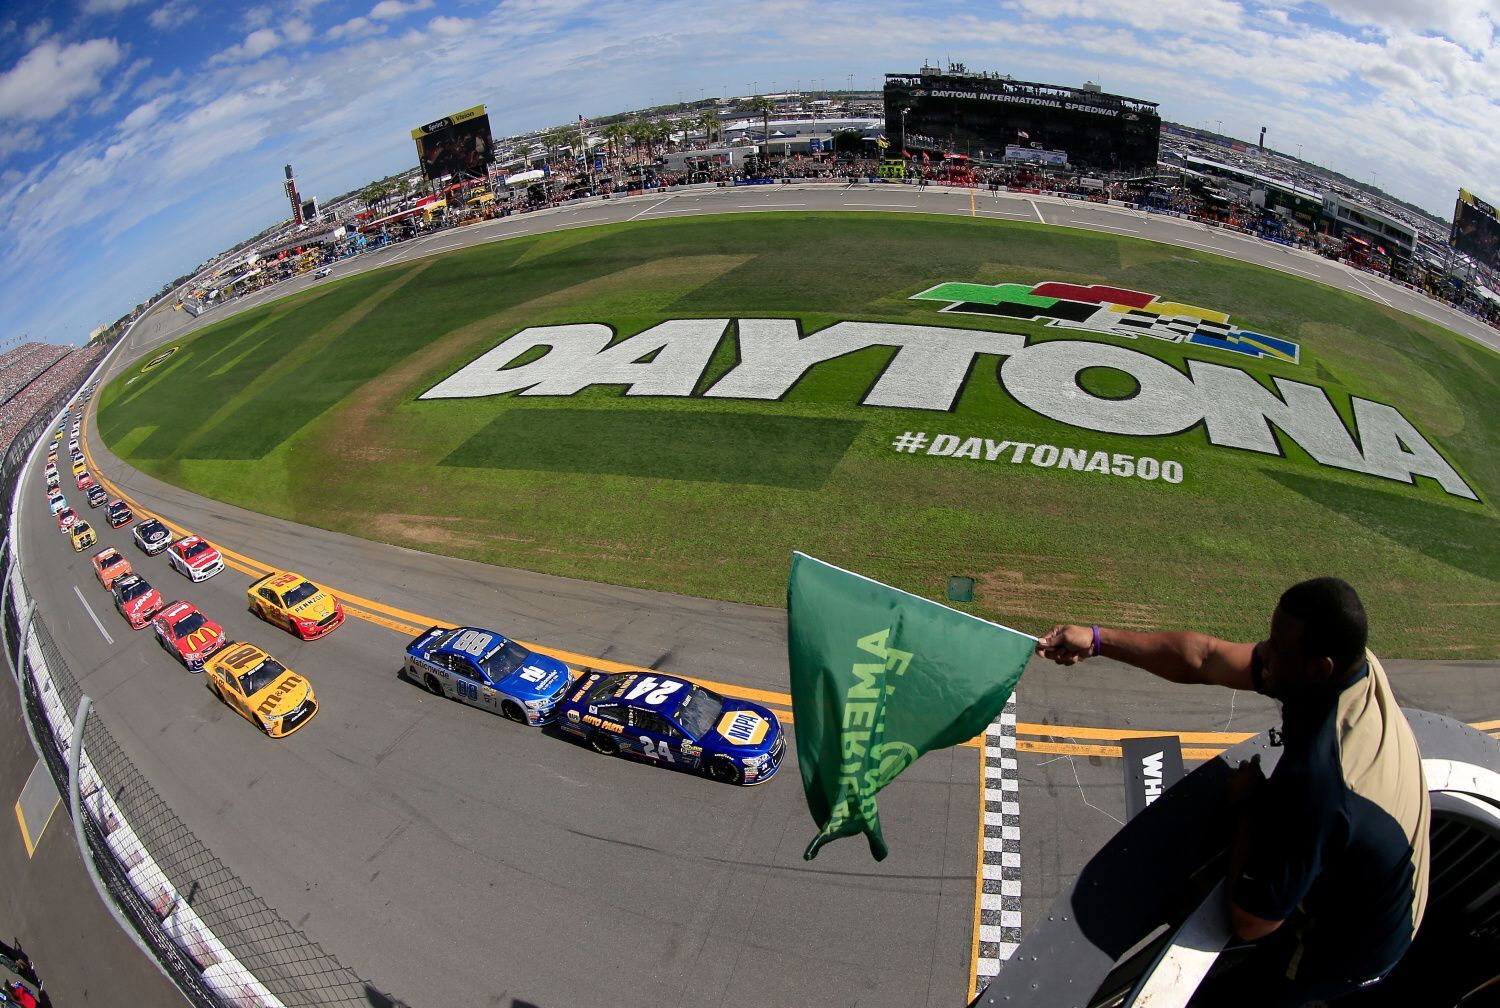 NASCAR 2016, Daytona 500: start